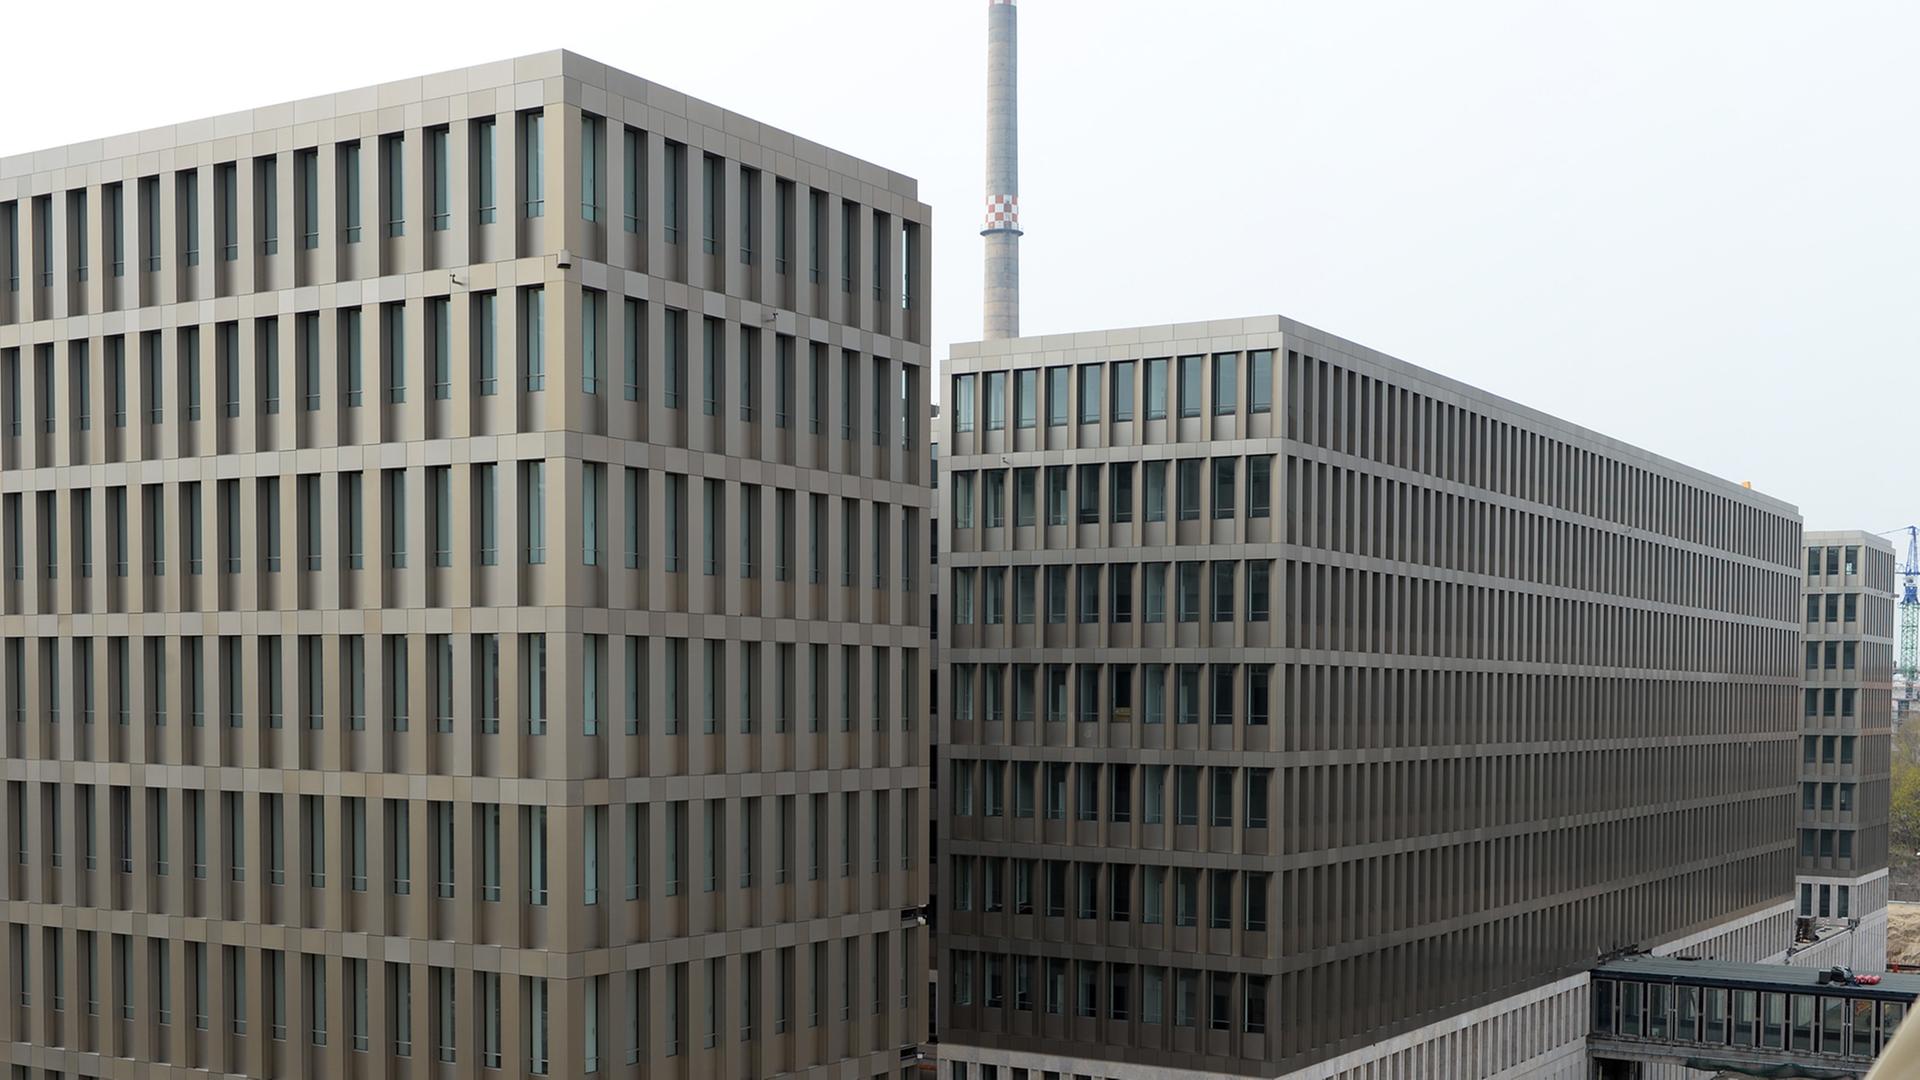 Bürogebäude auf dem Gelände des Bundesnachrichtendienstes (BDN), aufgenommen am 31.03.214 in Berlin während des Festaktes zur Eröffnung der Nordbebauung der Zentrale des BND.